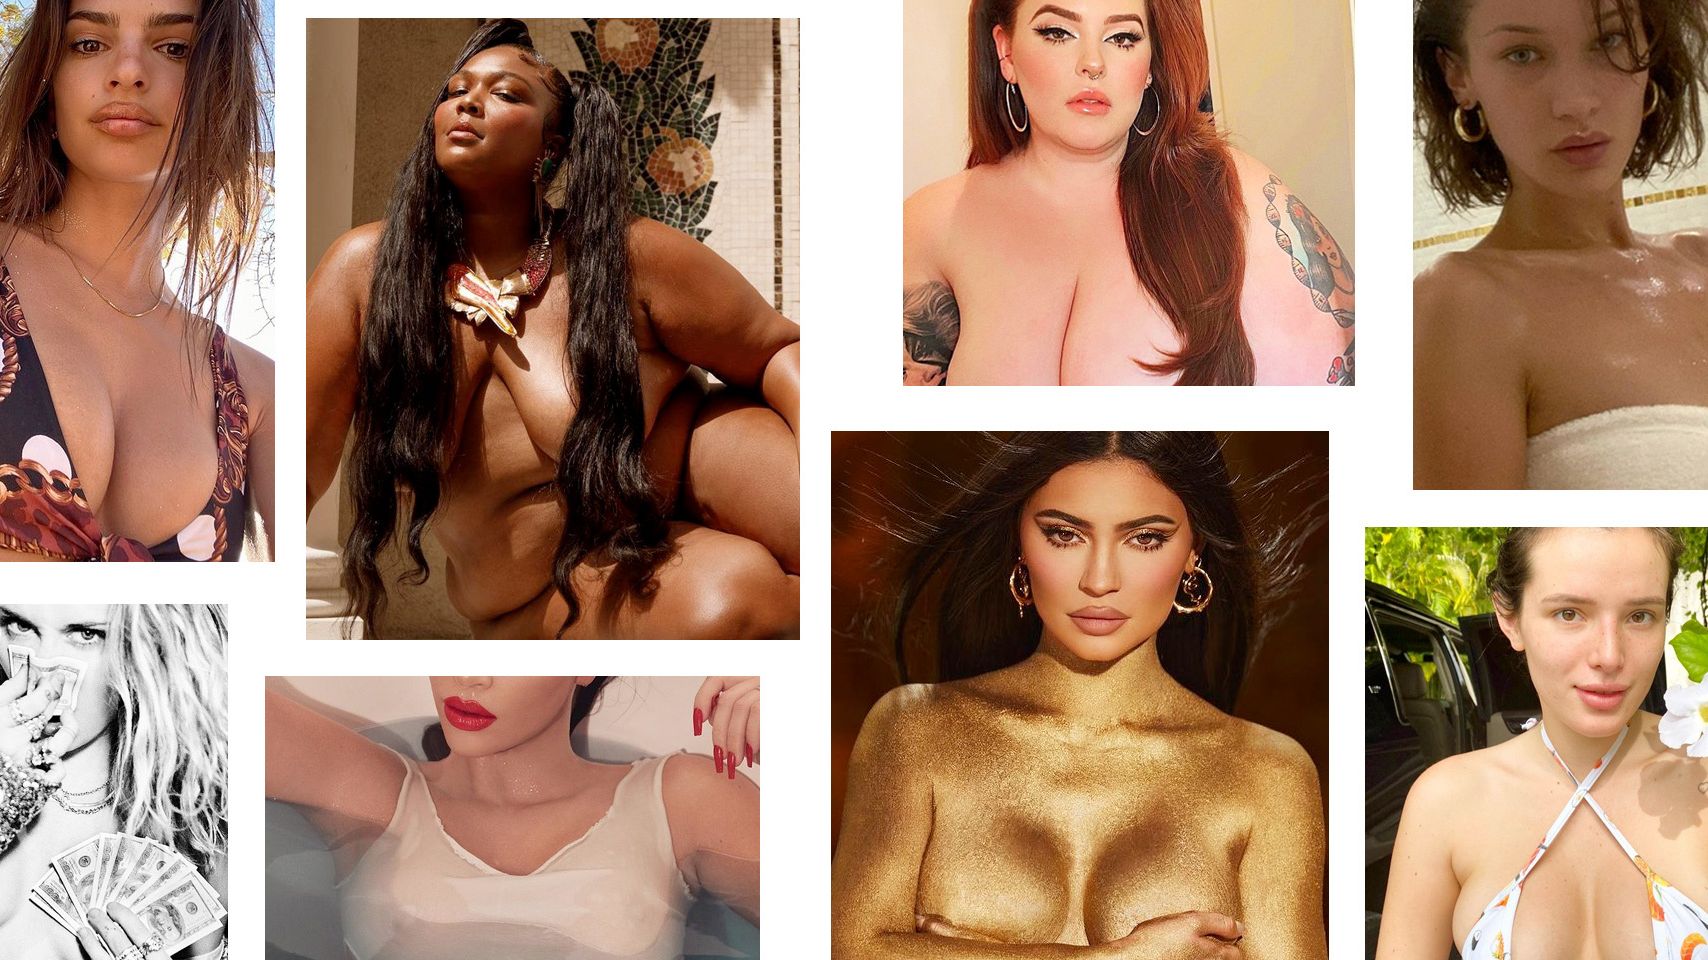 baishakhi sengupta recommends famous naked tits pic